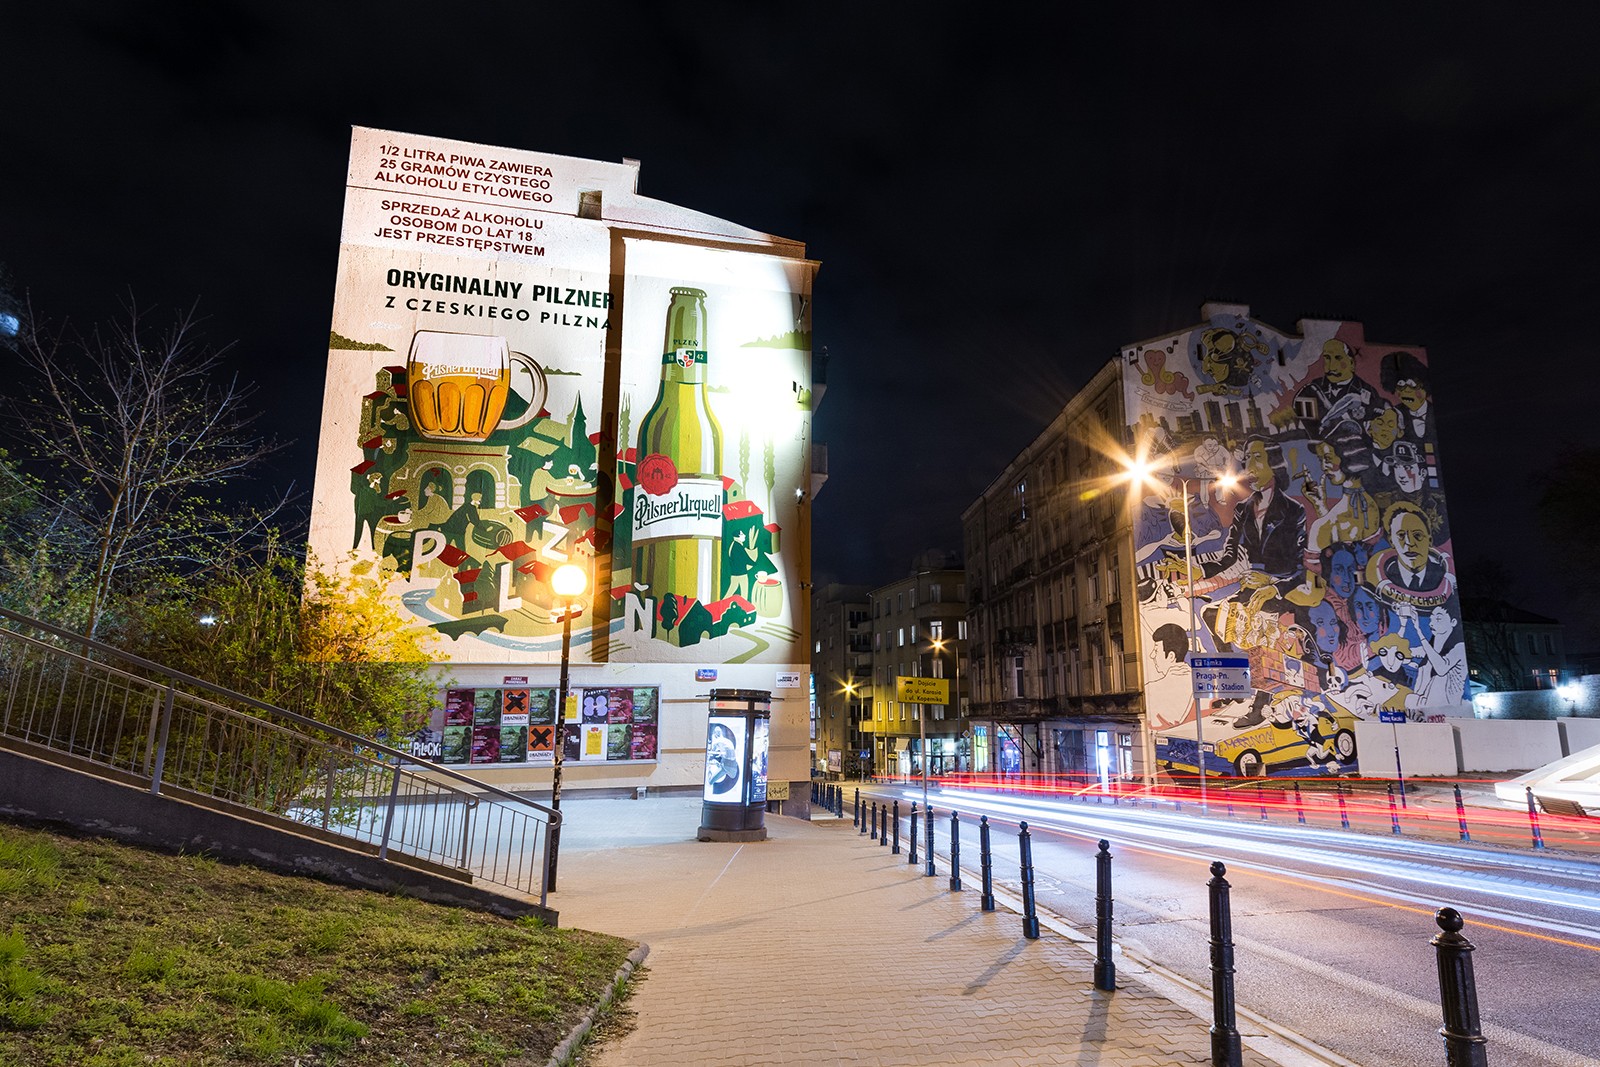 Mural przy ulicy Tamka 36 dla marki Pilsner Urquell | Oryginalny pilzner z czeskiego Pilzna | Portfolio